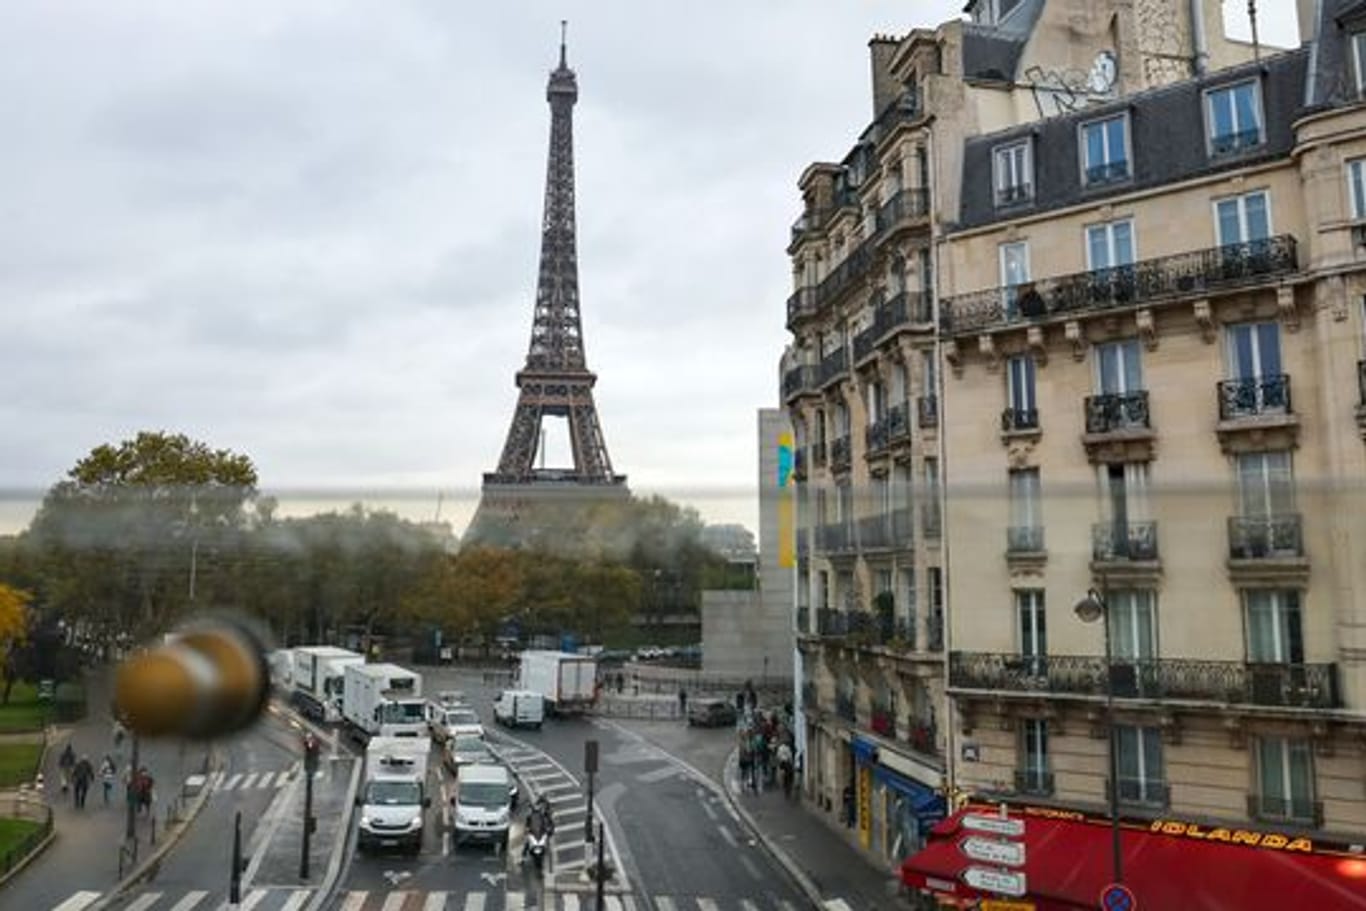 Aus dem Fenster der Pariser Metro ist hinter Wohnhäusern der Eiffelturm zu sehen - samt des üblichen Straßenrkehrs.